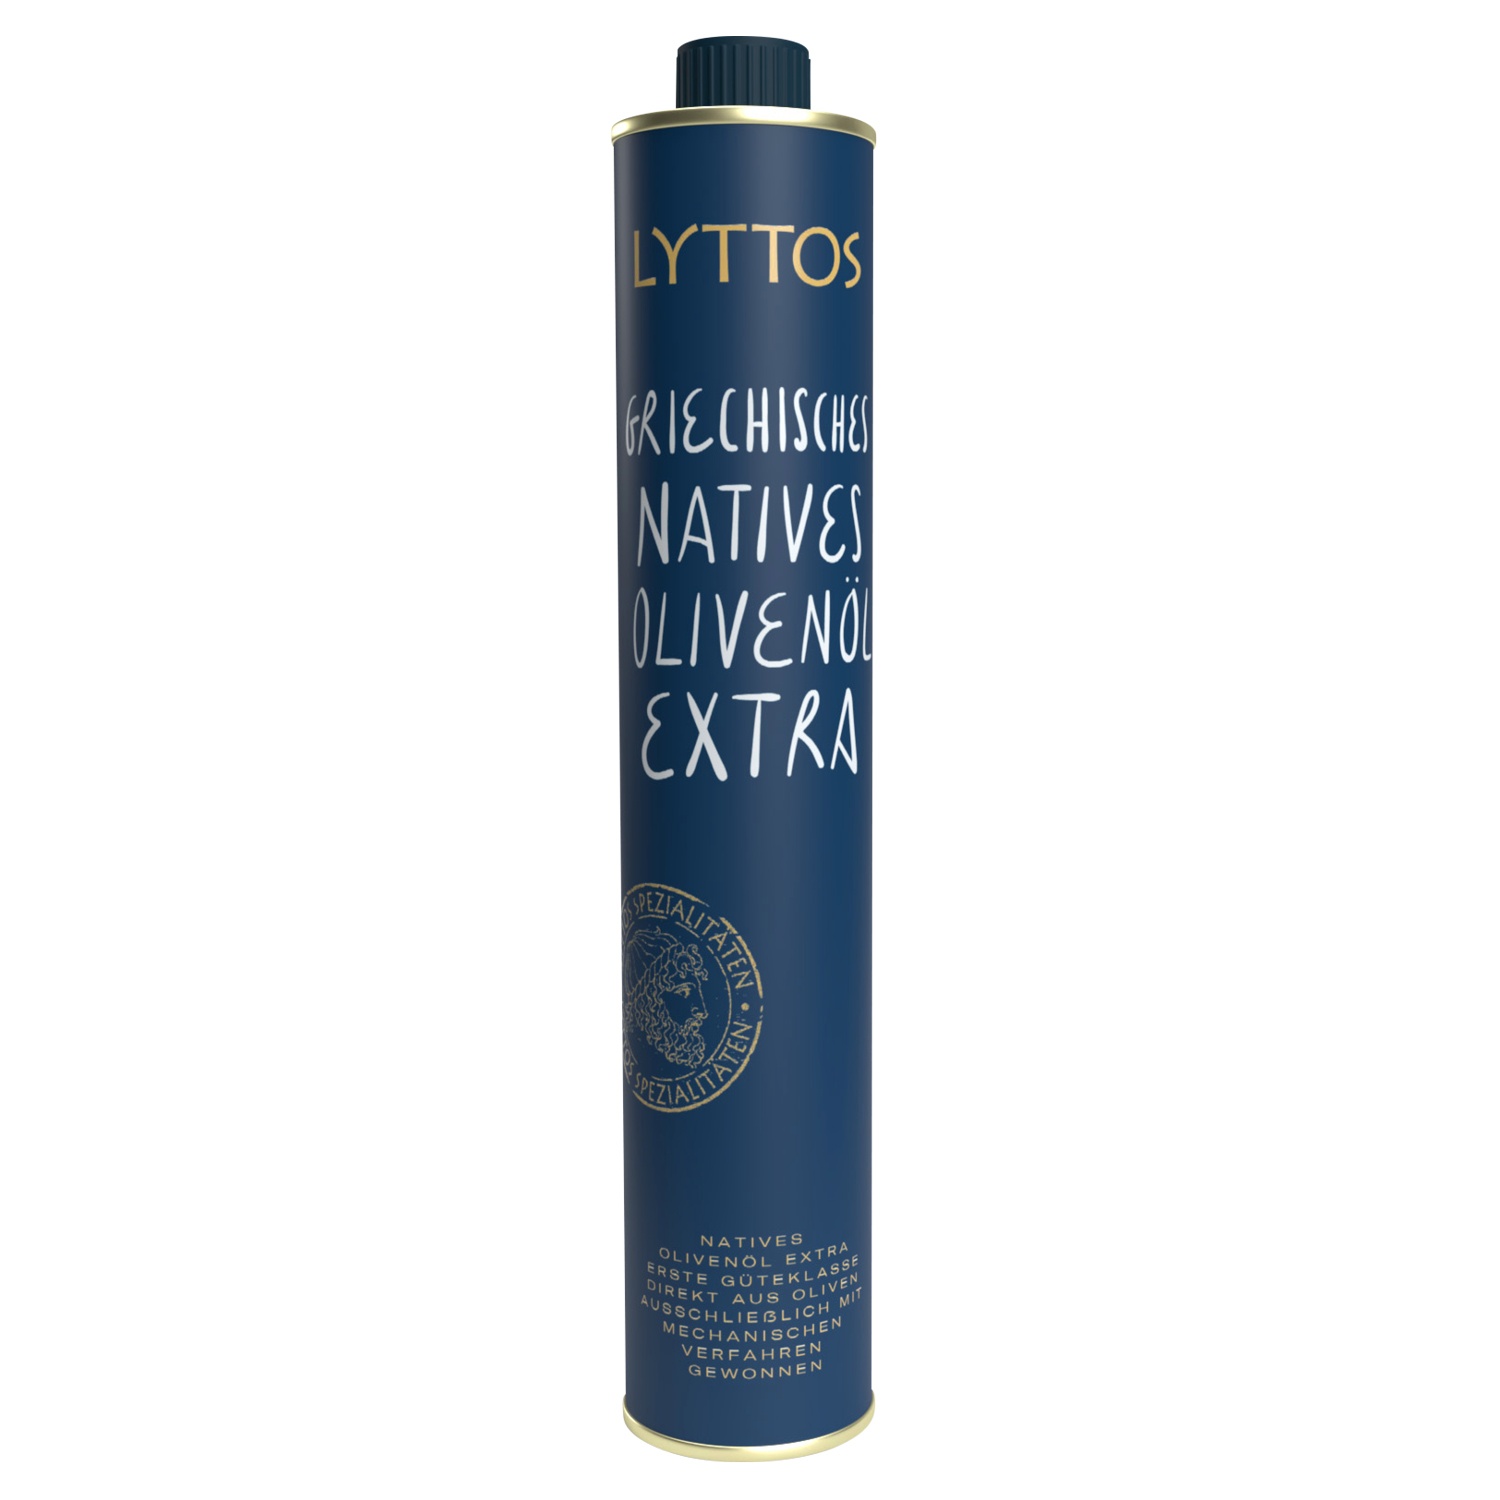 LYTTOS Griechisches Natives Olivenöl Extra 500ml